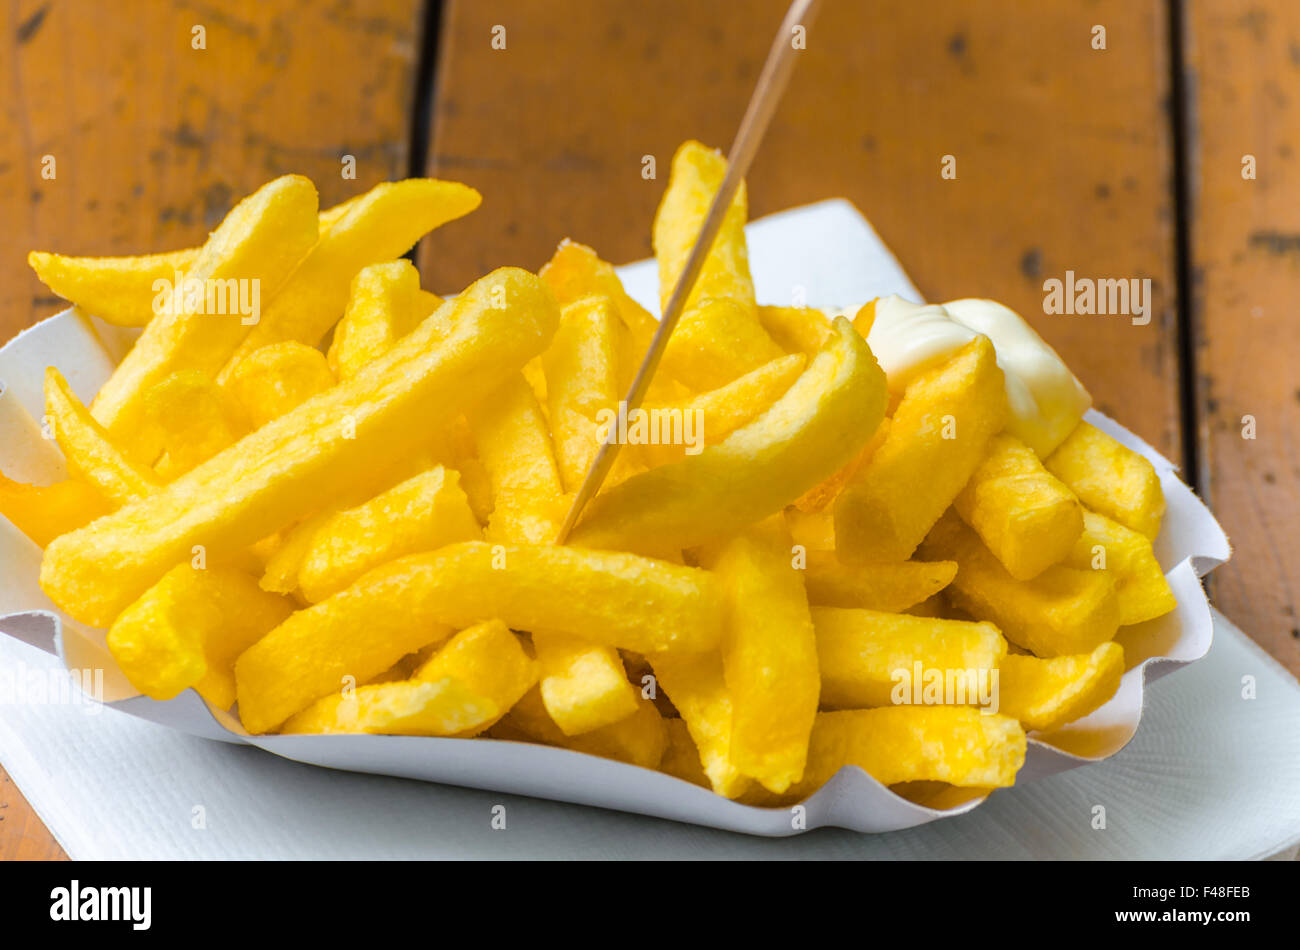 French fries, Pommes frites, patatas bravas, Stock Photo